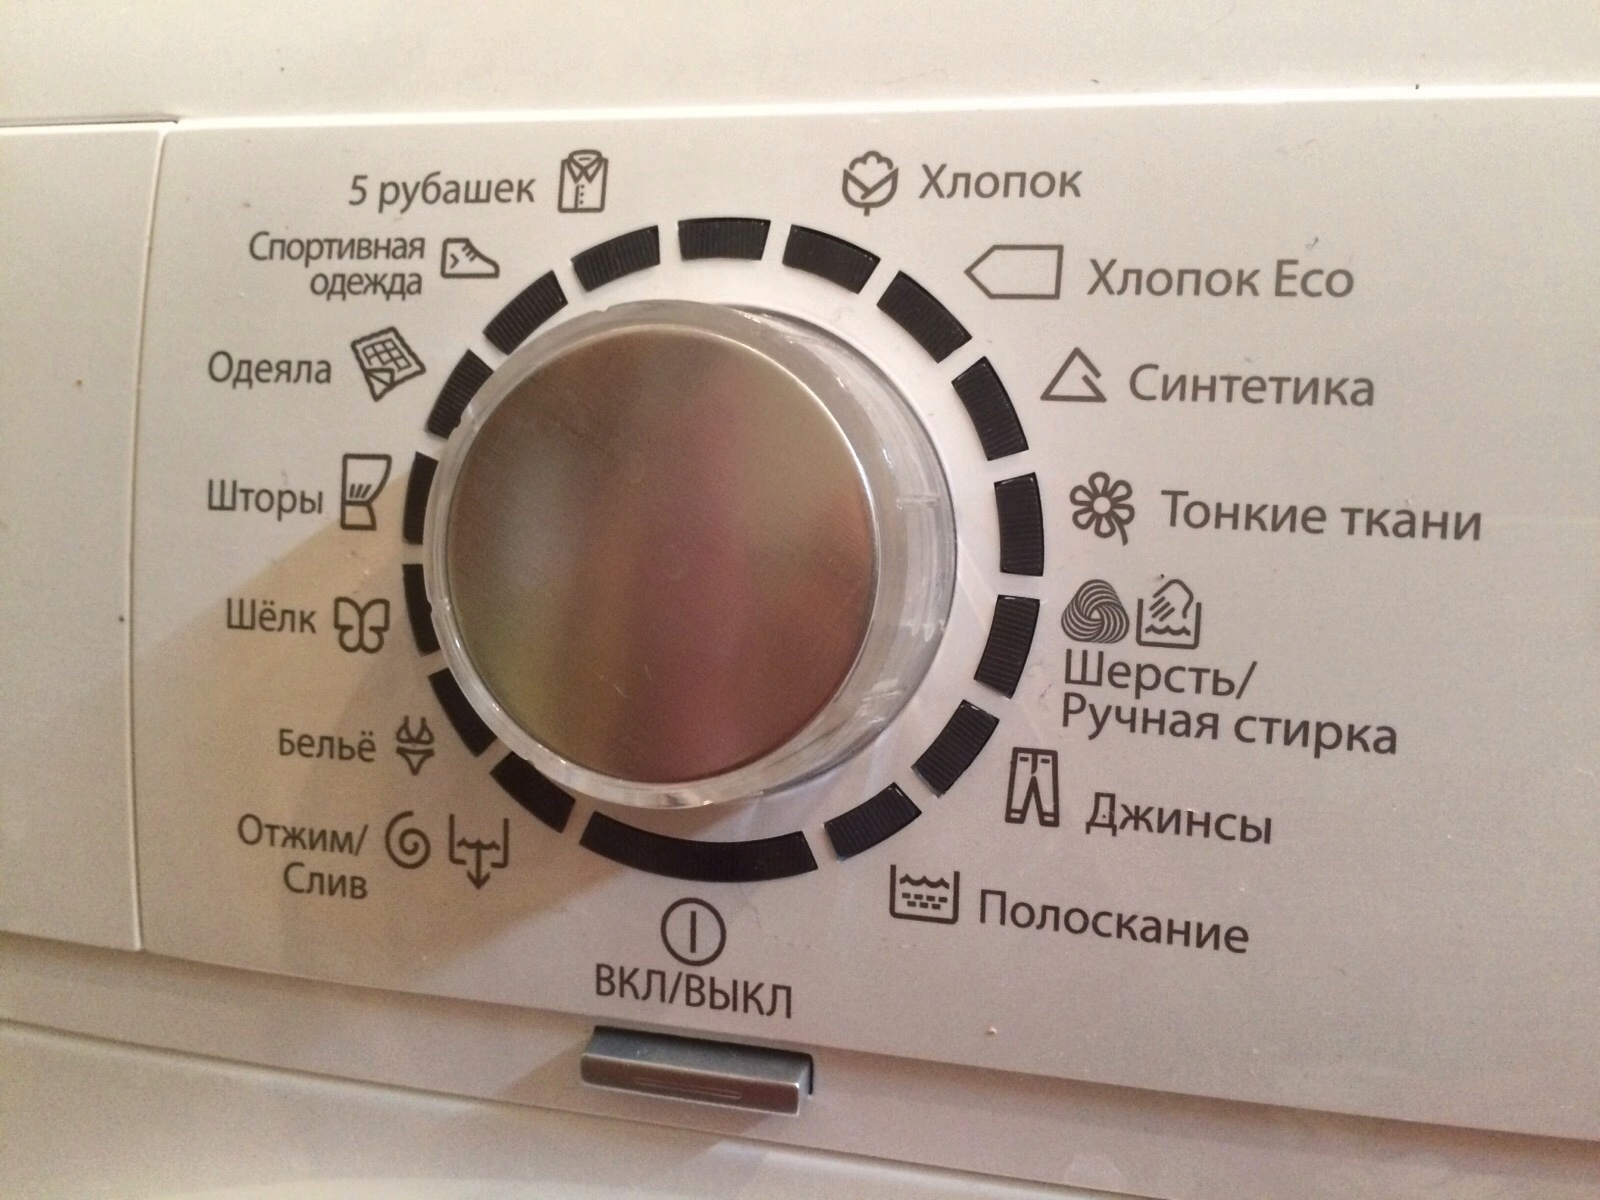 Отжим деликатной стирки. Дополнительное полоскание в стиральной машине бош. Значок отжима на стиральной машине Electrolux. Обозначения на стиральной машинке Electrolux. Обозначения на машинке Electrolux.